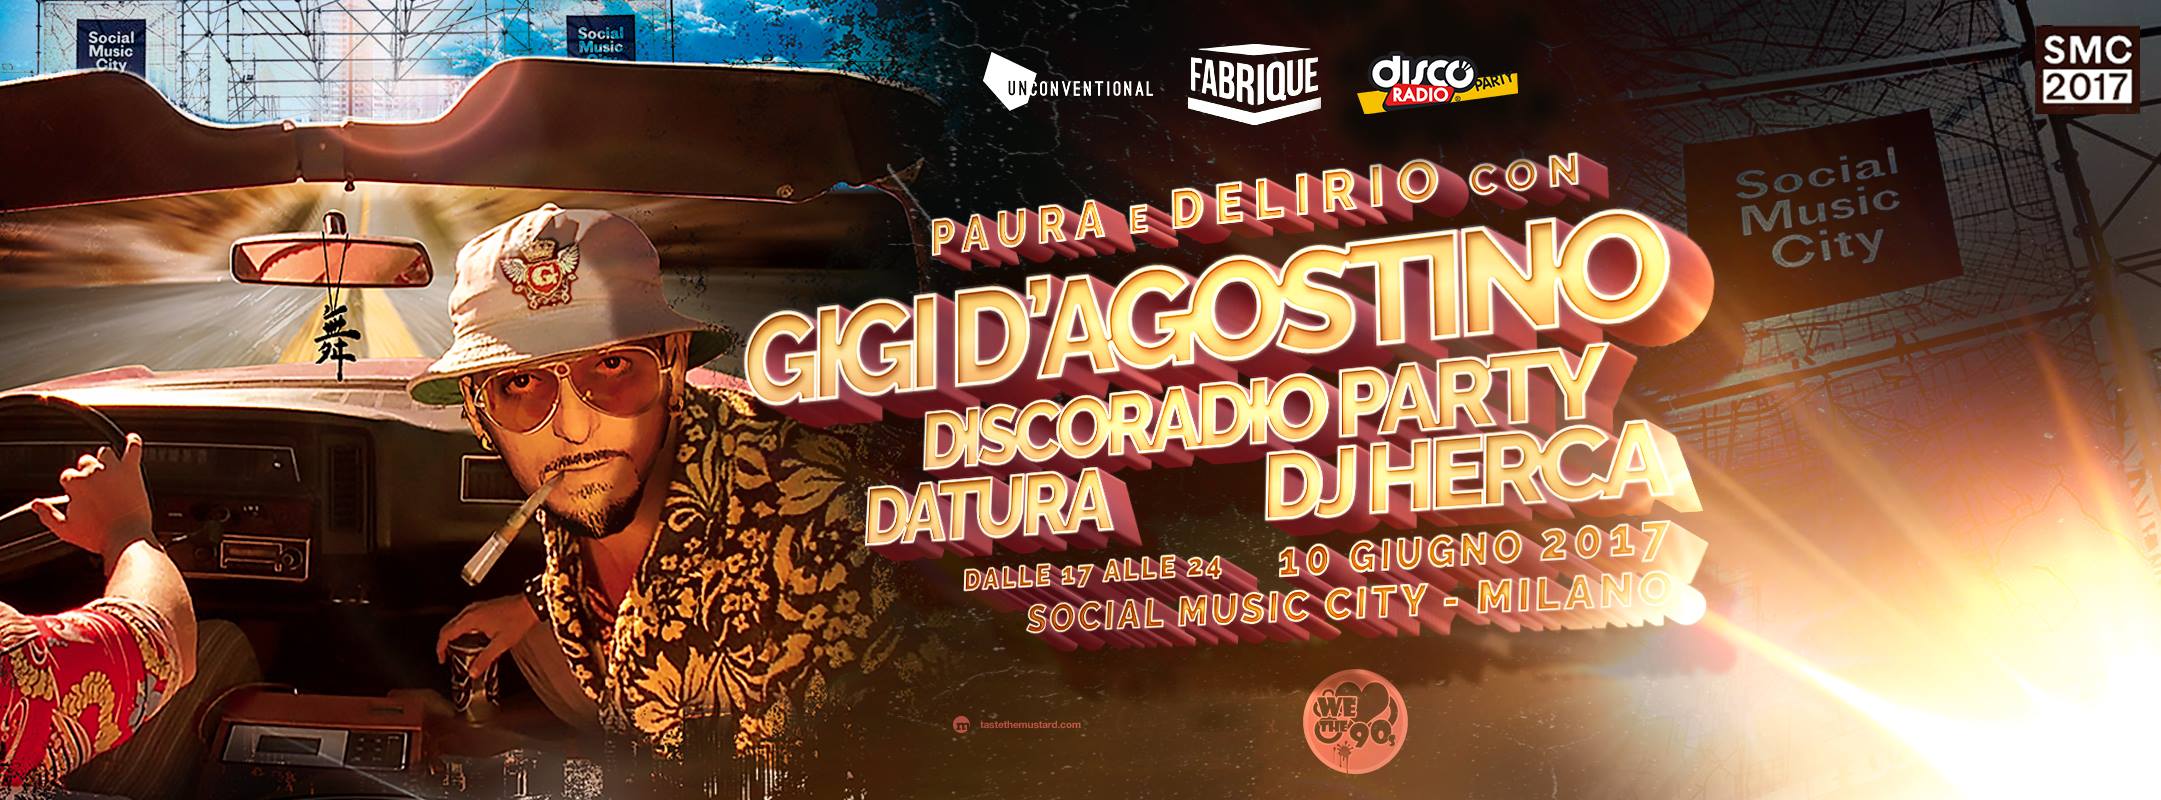 Gigi D'agostino Social Music City 10 06 207